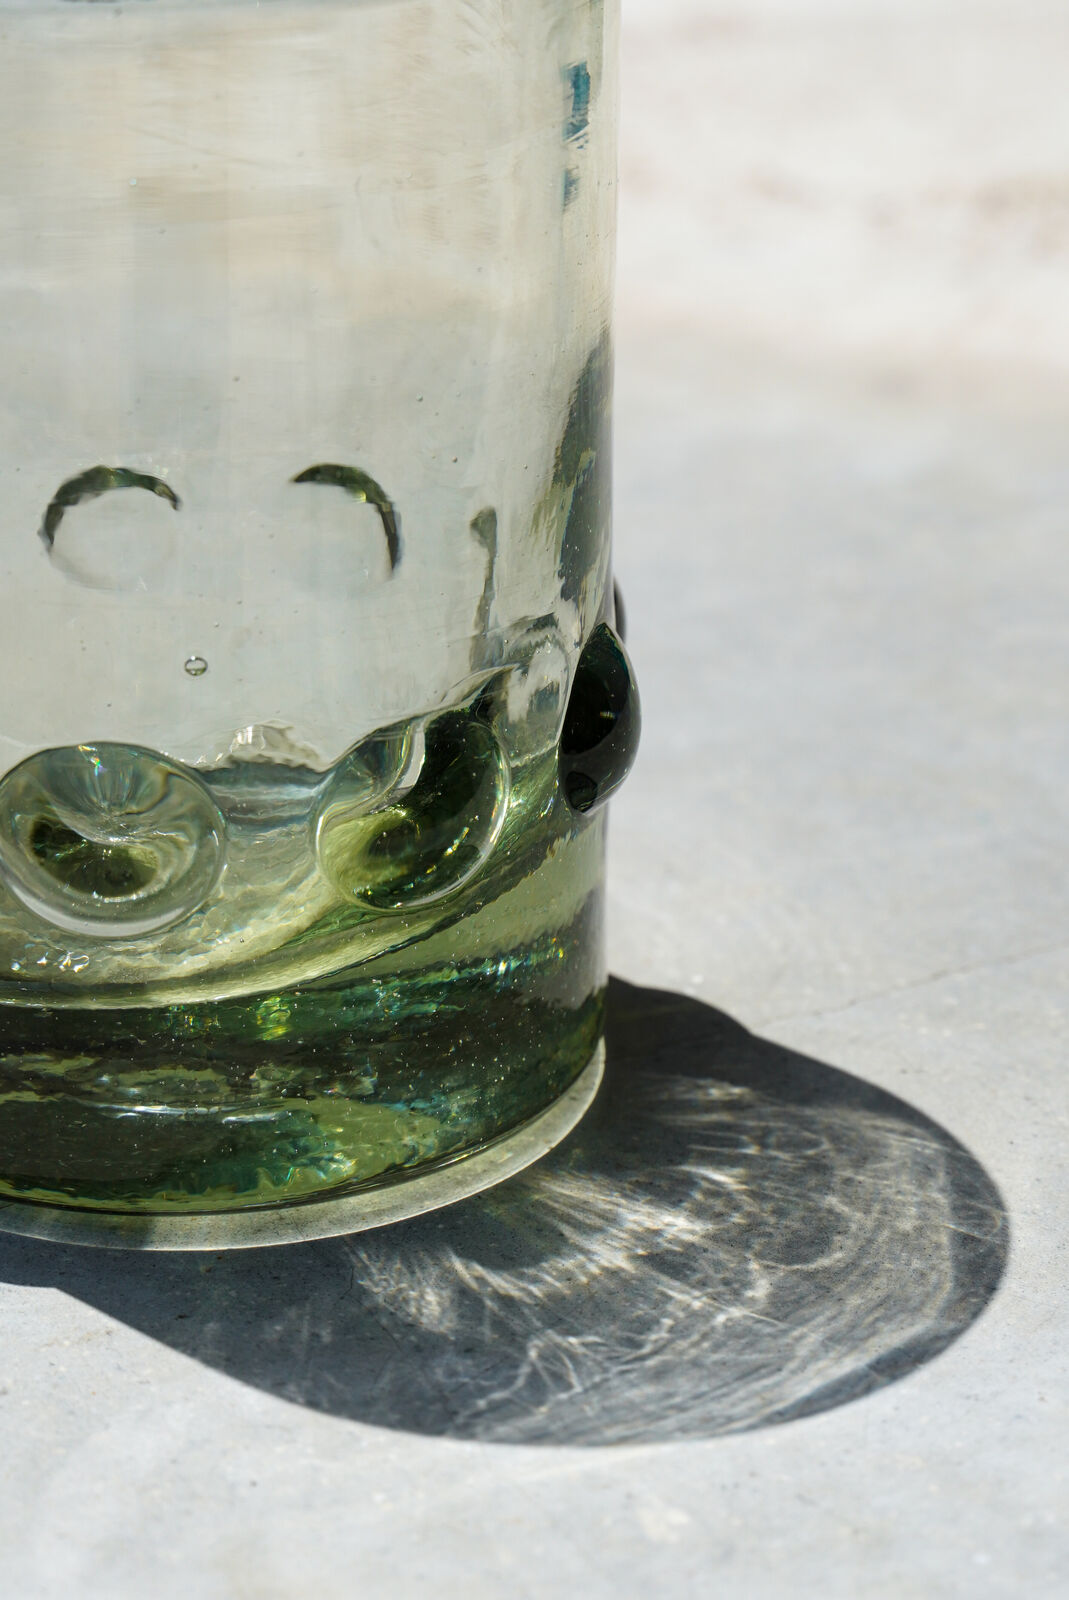 Susurros Margarita Glass Clear